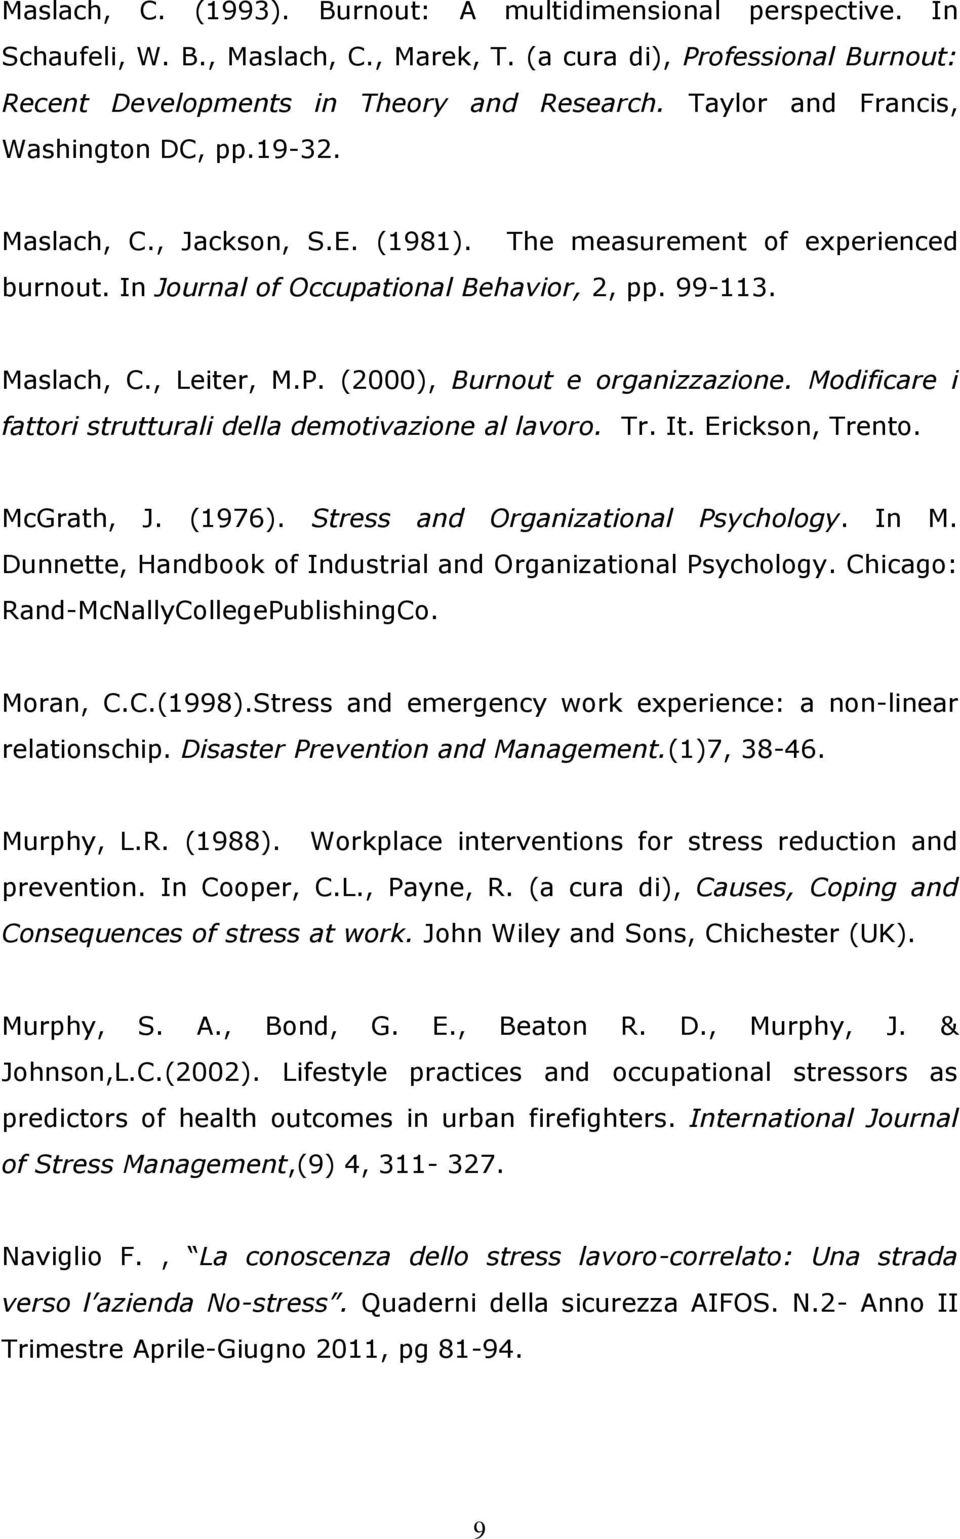 (2000), Burnout e organizzazione. Modificare i fattori strutturali della demotivazione al lavoro. Tr. It. Erickson, Trento. McGrath, J. (1976). Stress and Organizational Psychology. In M.